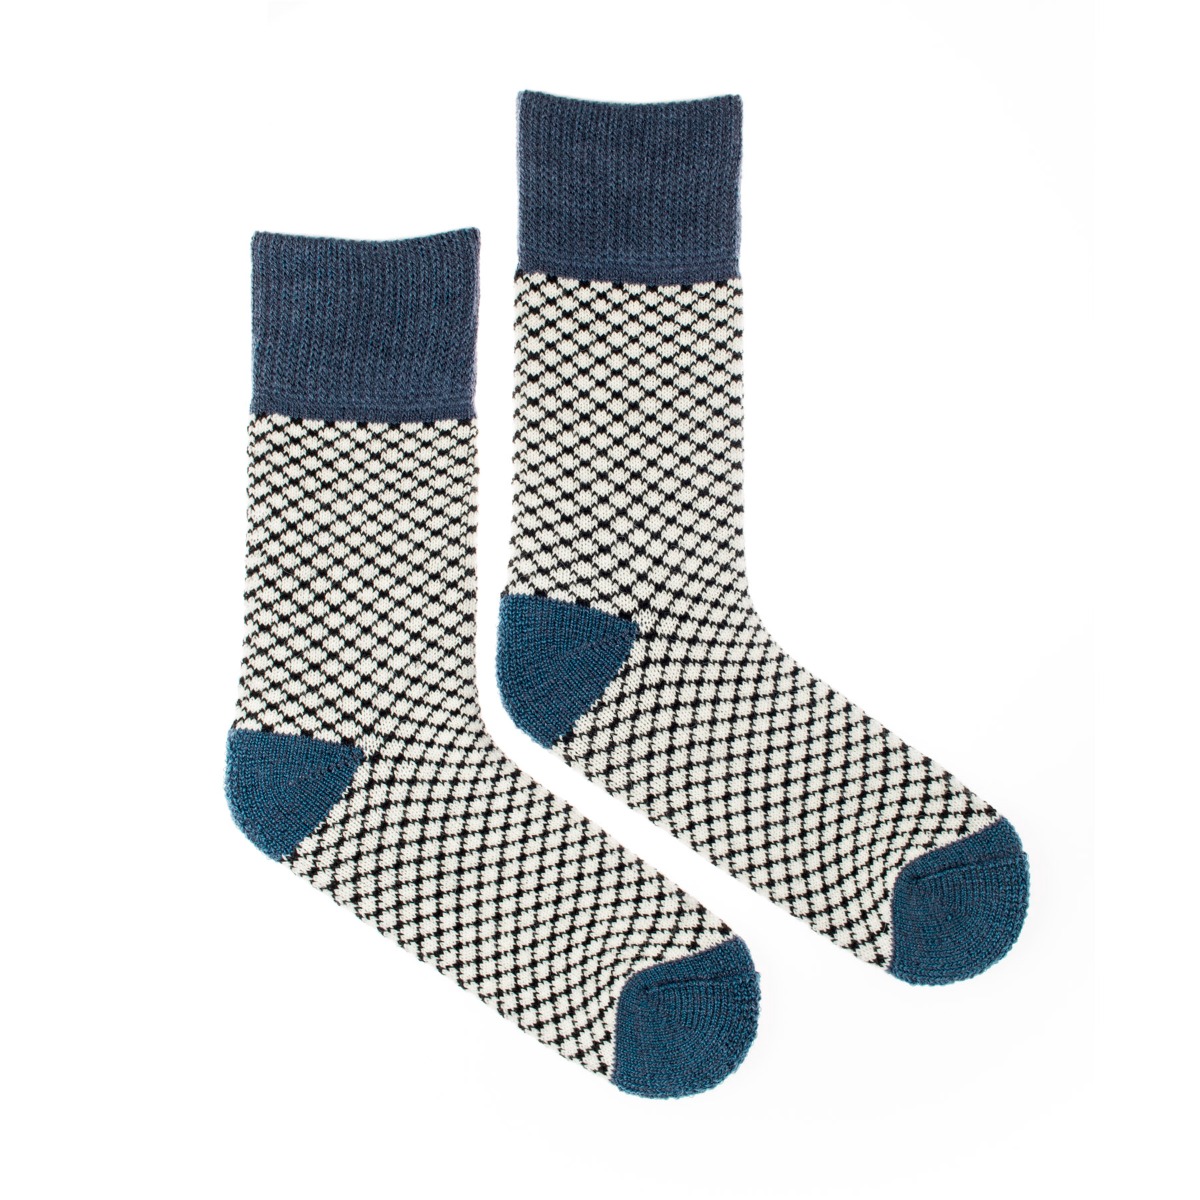 Vlněné ponožky Vlnáč Slunce modré Fusakle